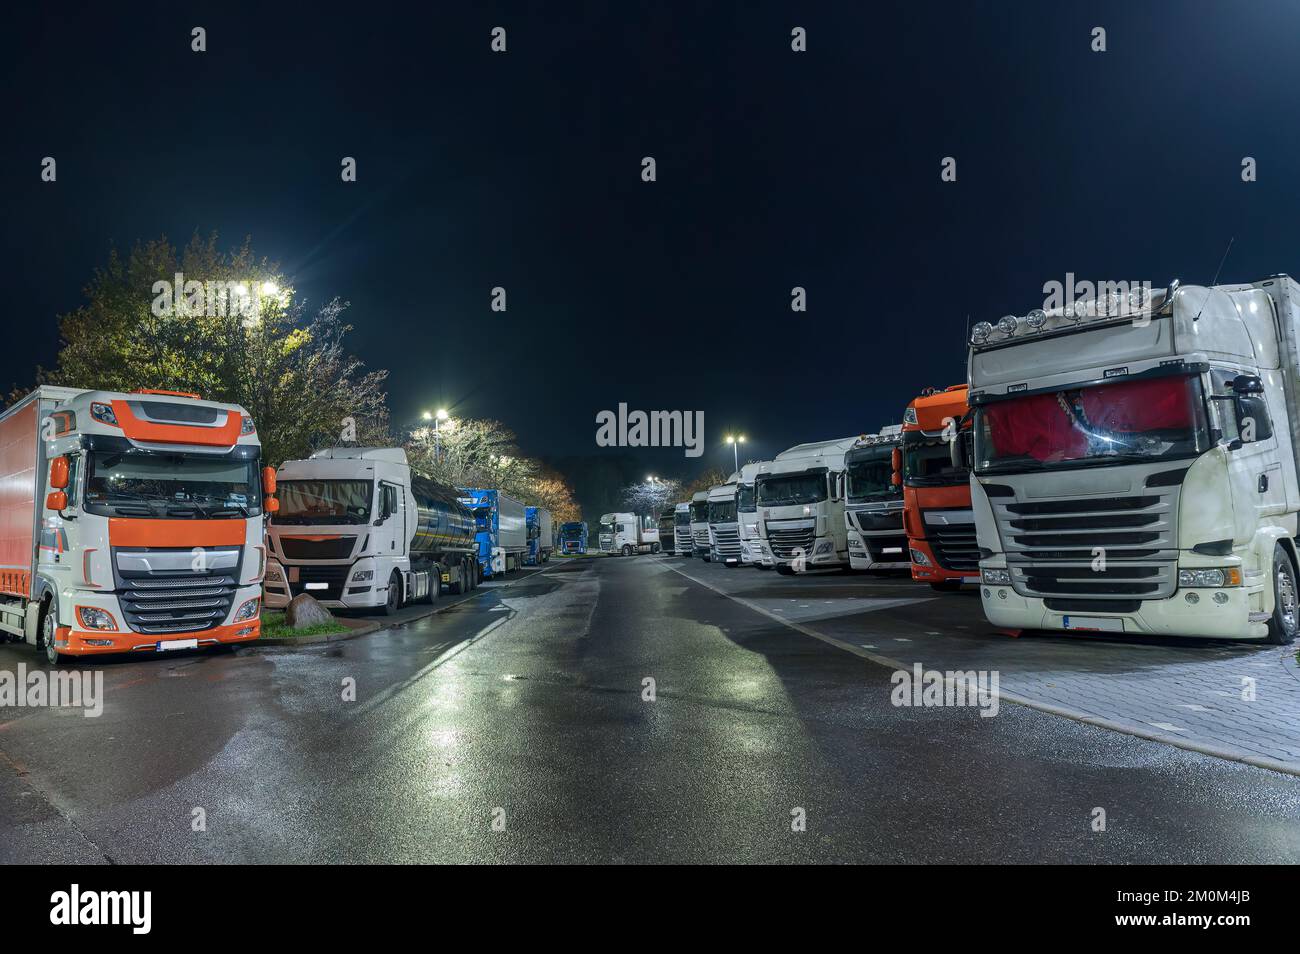 Alltägliches Leben auf deutschen Autobahnparkplätzen, zu wenig Platz für die LKWs, die daher teilweise auf Parkplätzen parken müssen. Stockfoto